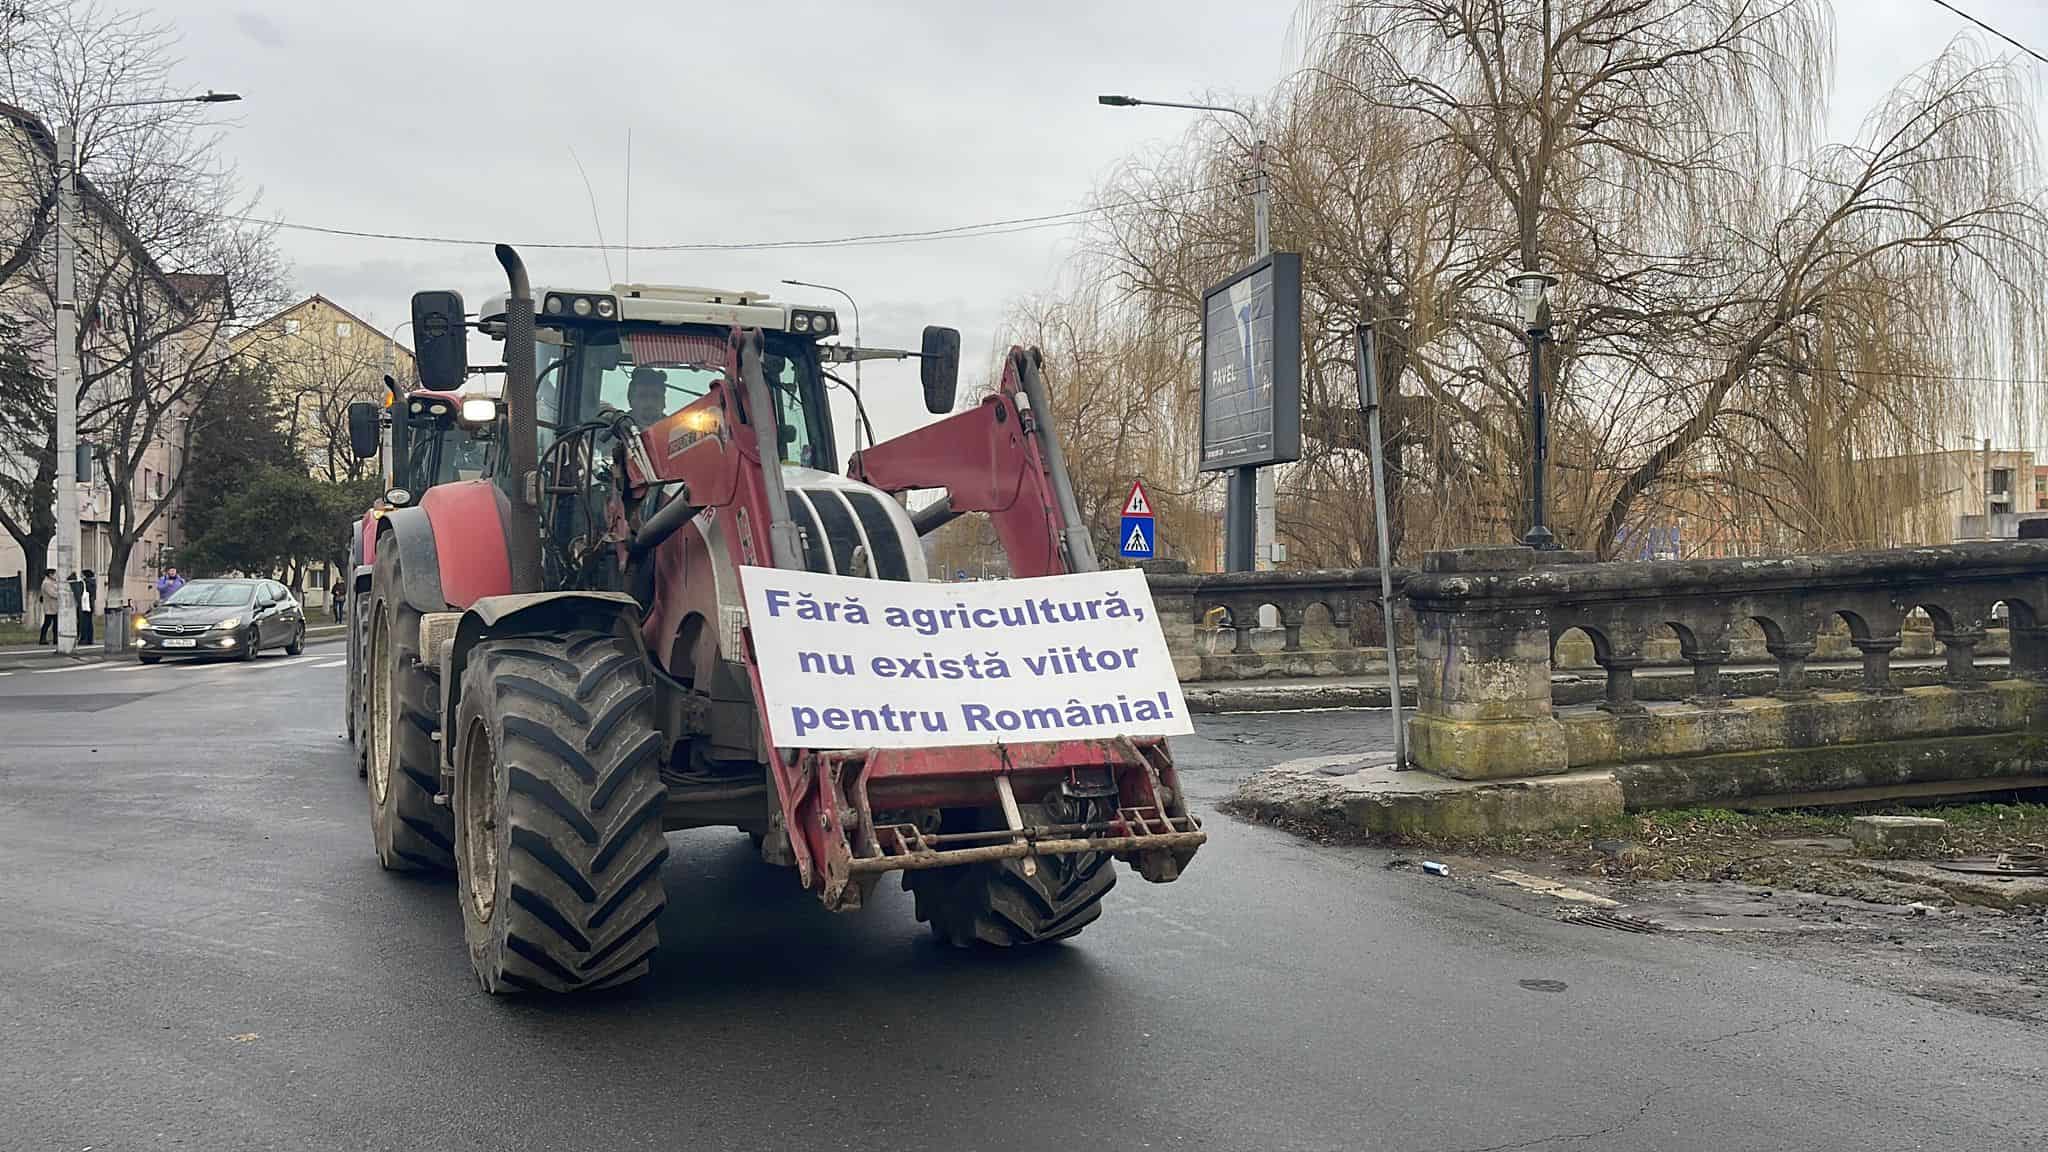 fermierii protestează și joi la sibiu. zeci de tractoare merg în coloană prin municipiu (video, foto, update)